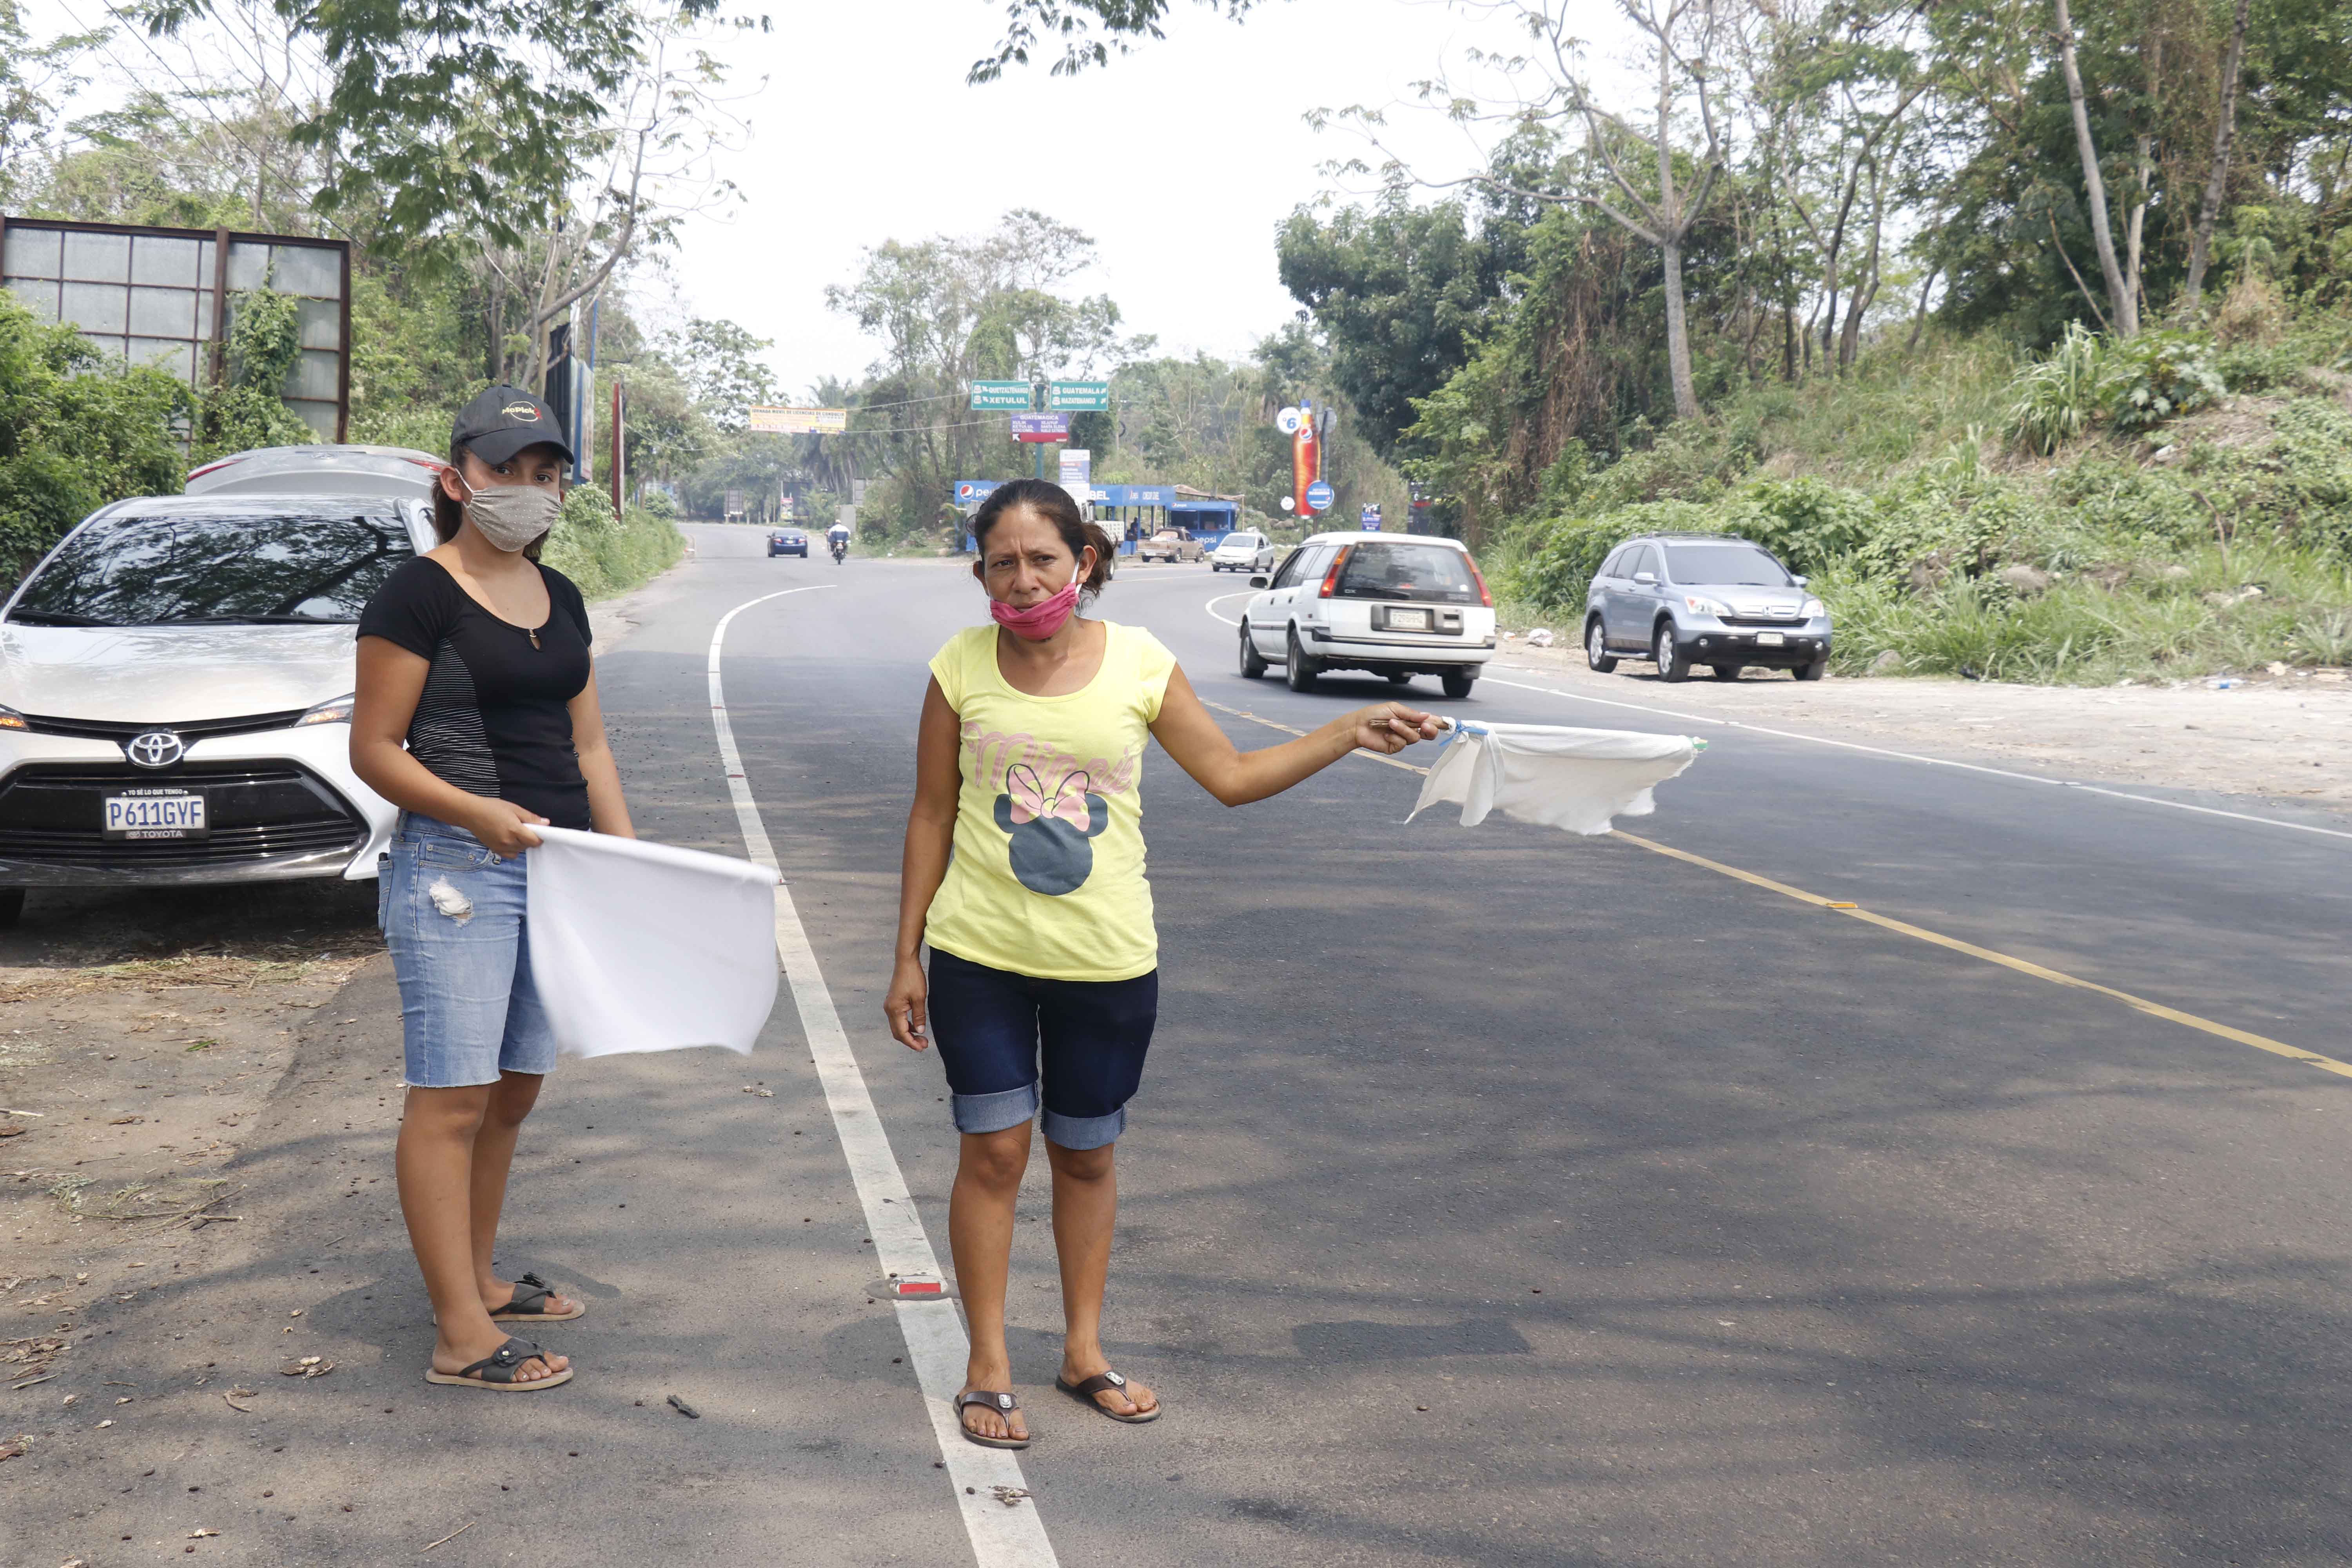 Las escenas de personas con banderas blancas pidiendo ayuda en las calles aumenta cada día. Miles de familias han sido afectada por la crisis económica a causa del coronavirus. (Foto Prensa Libre: Hemeroteca) 